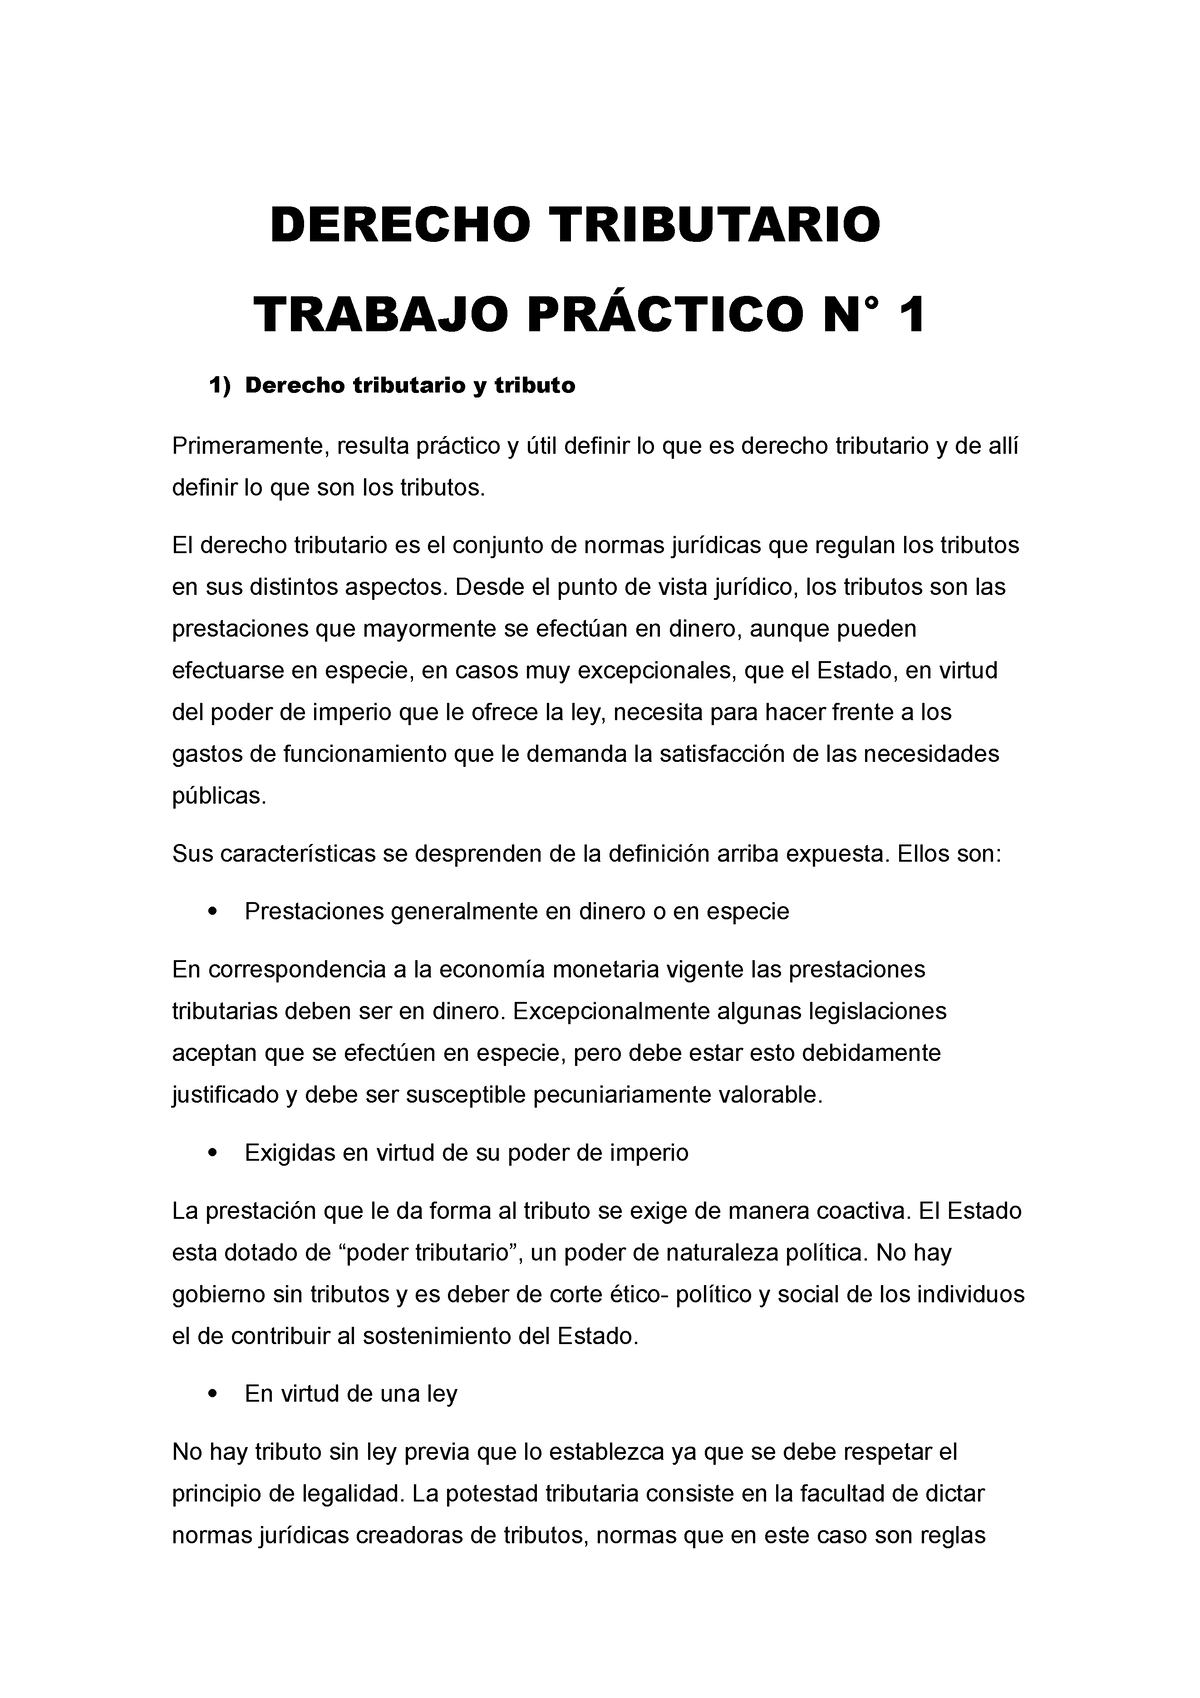 Derecho Tributario Tp 1 2022 Derecho Tributario Trabajo PrÁctico N° 1 Derecho Tributario Y 9232